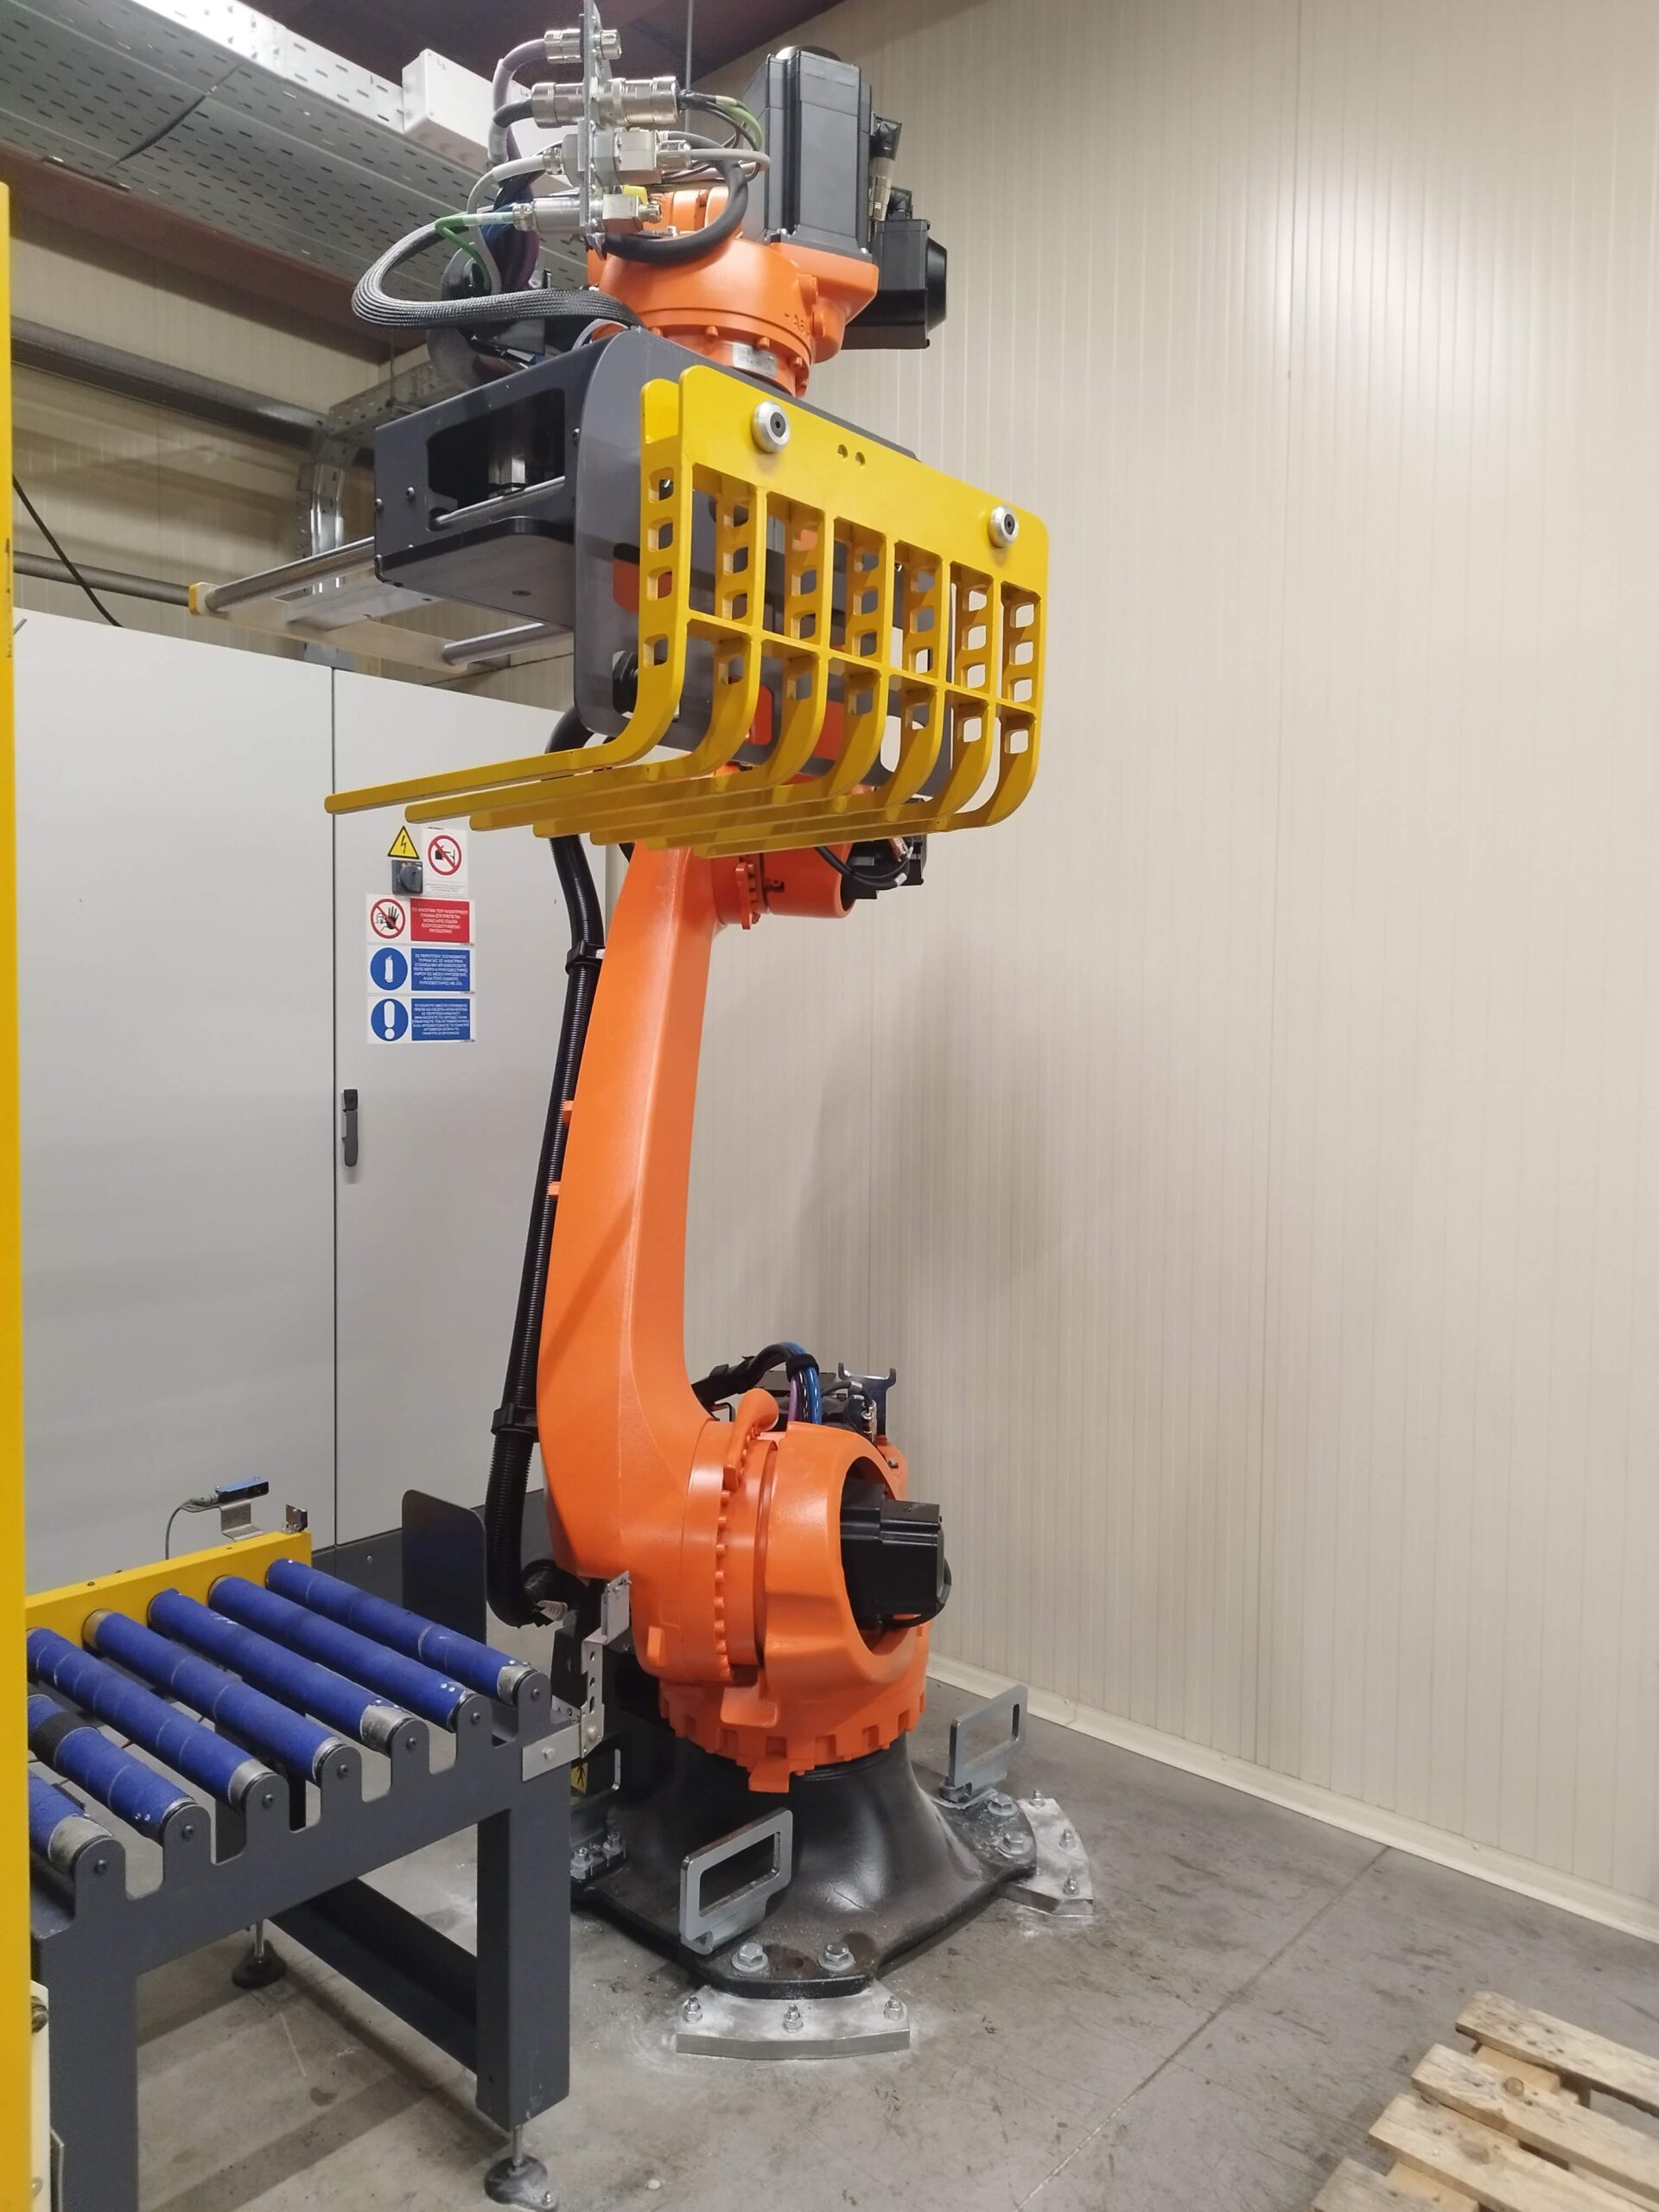 Παλετοποίηση με ρομποτικό σύστημα KUKA Robotics στη ΖΩΟΝΟΜΗ ΑΒΕΕ